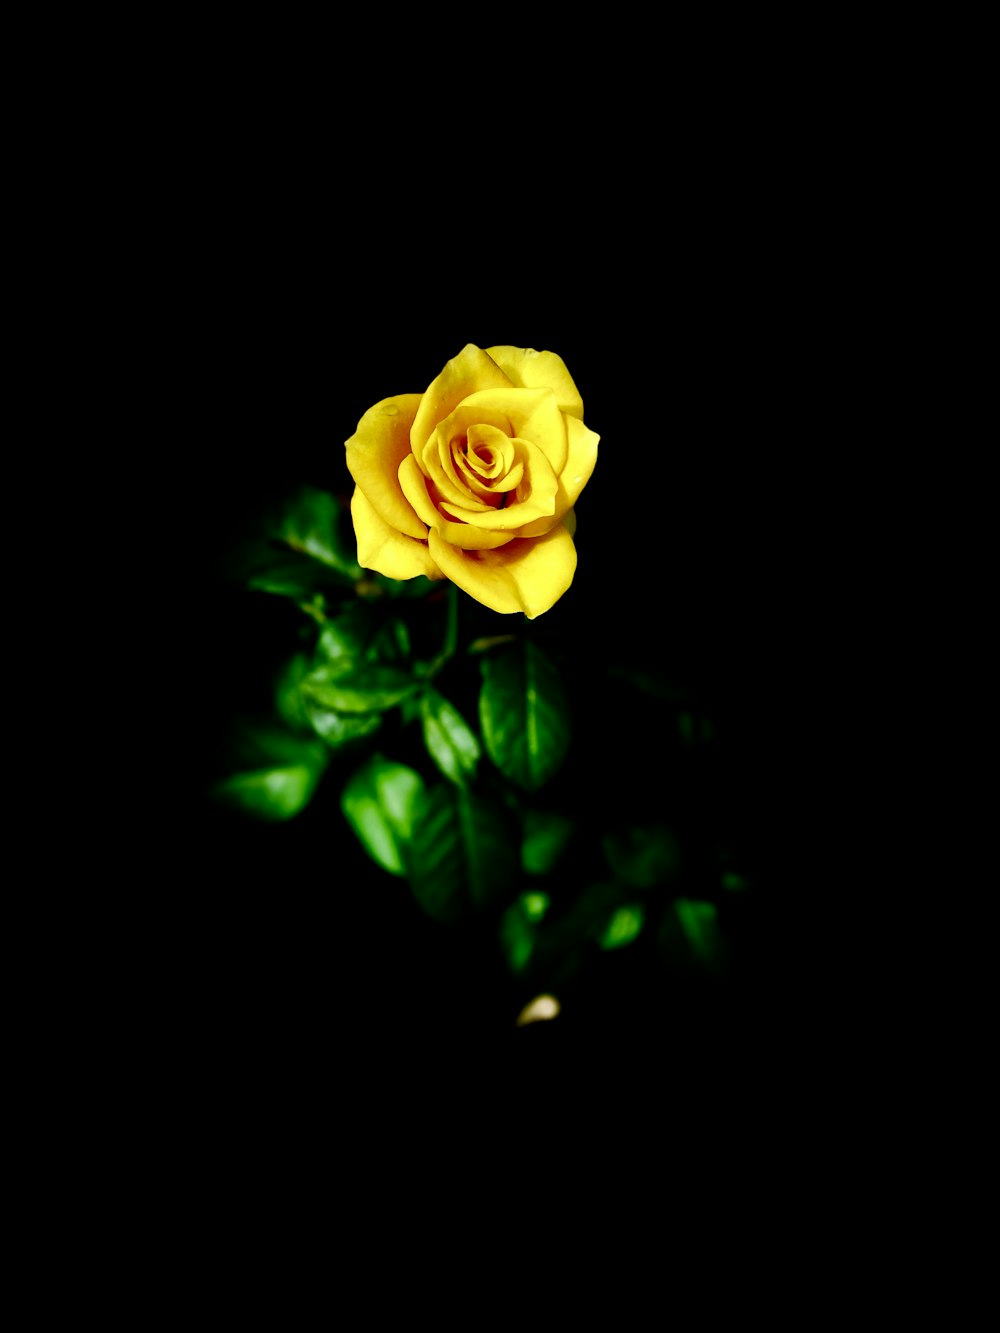 Fotografia selettiva di messa a fuoco del fiore di rosa gialla in fiore